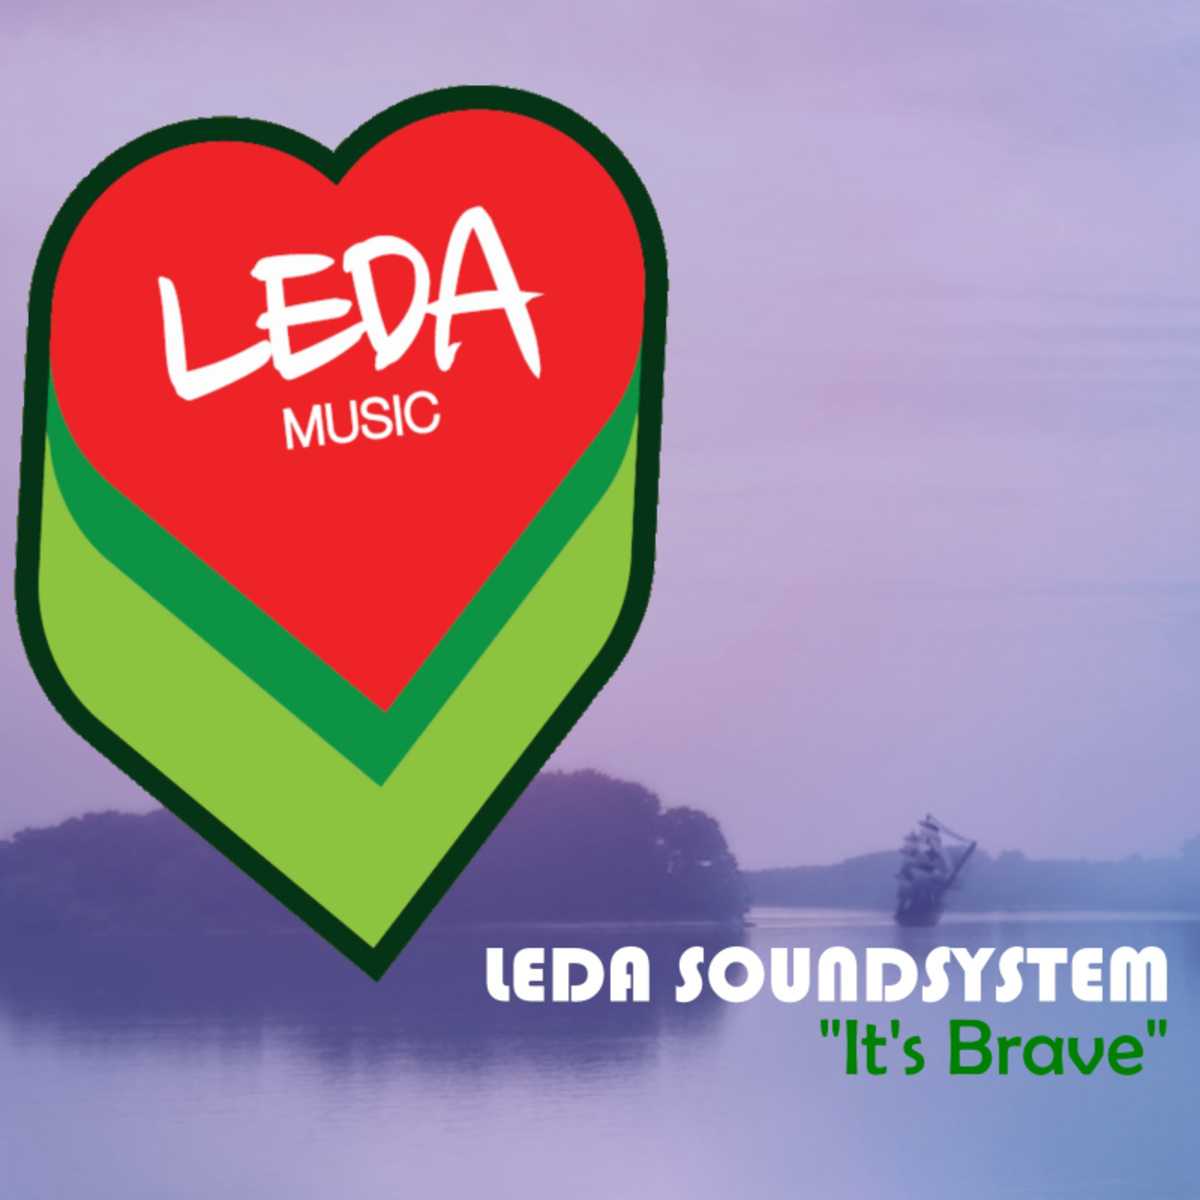 Leda SoundSystem - It's Brave / Leda Music